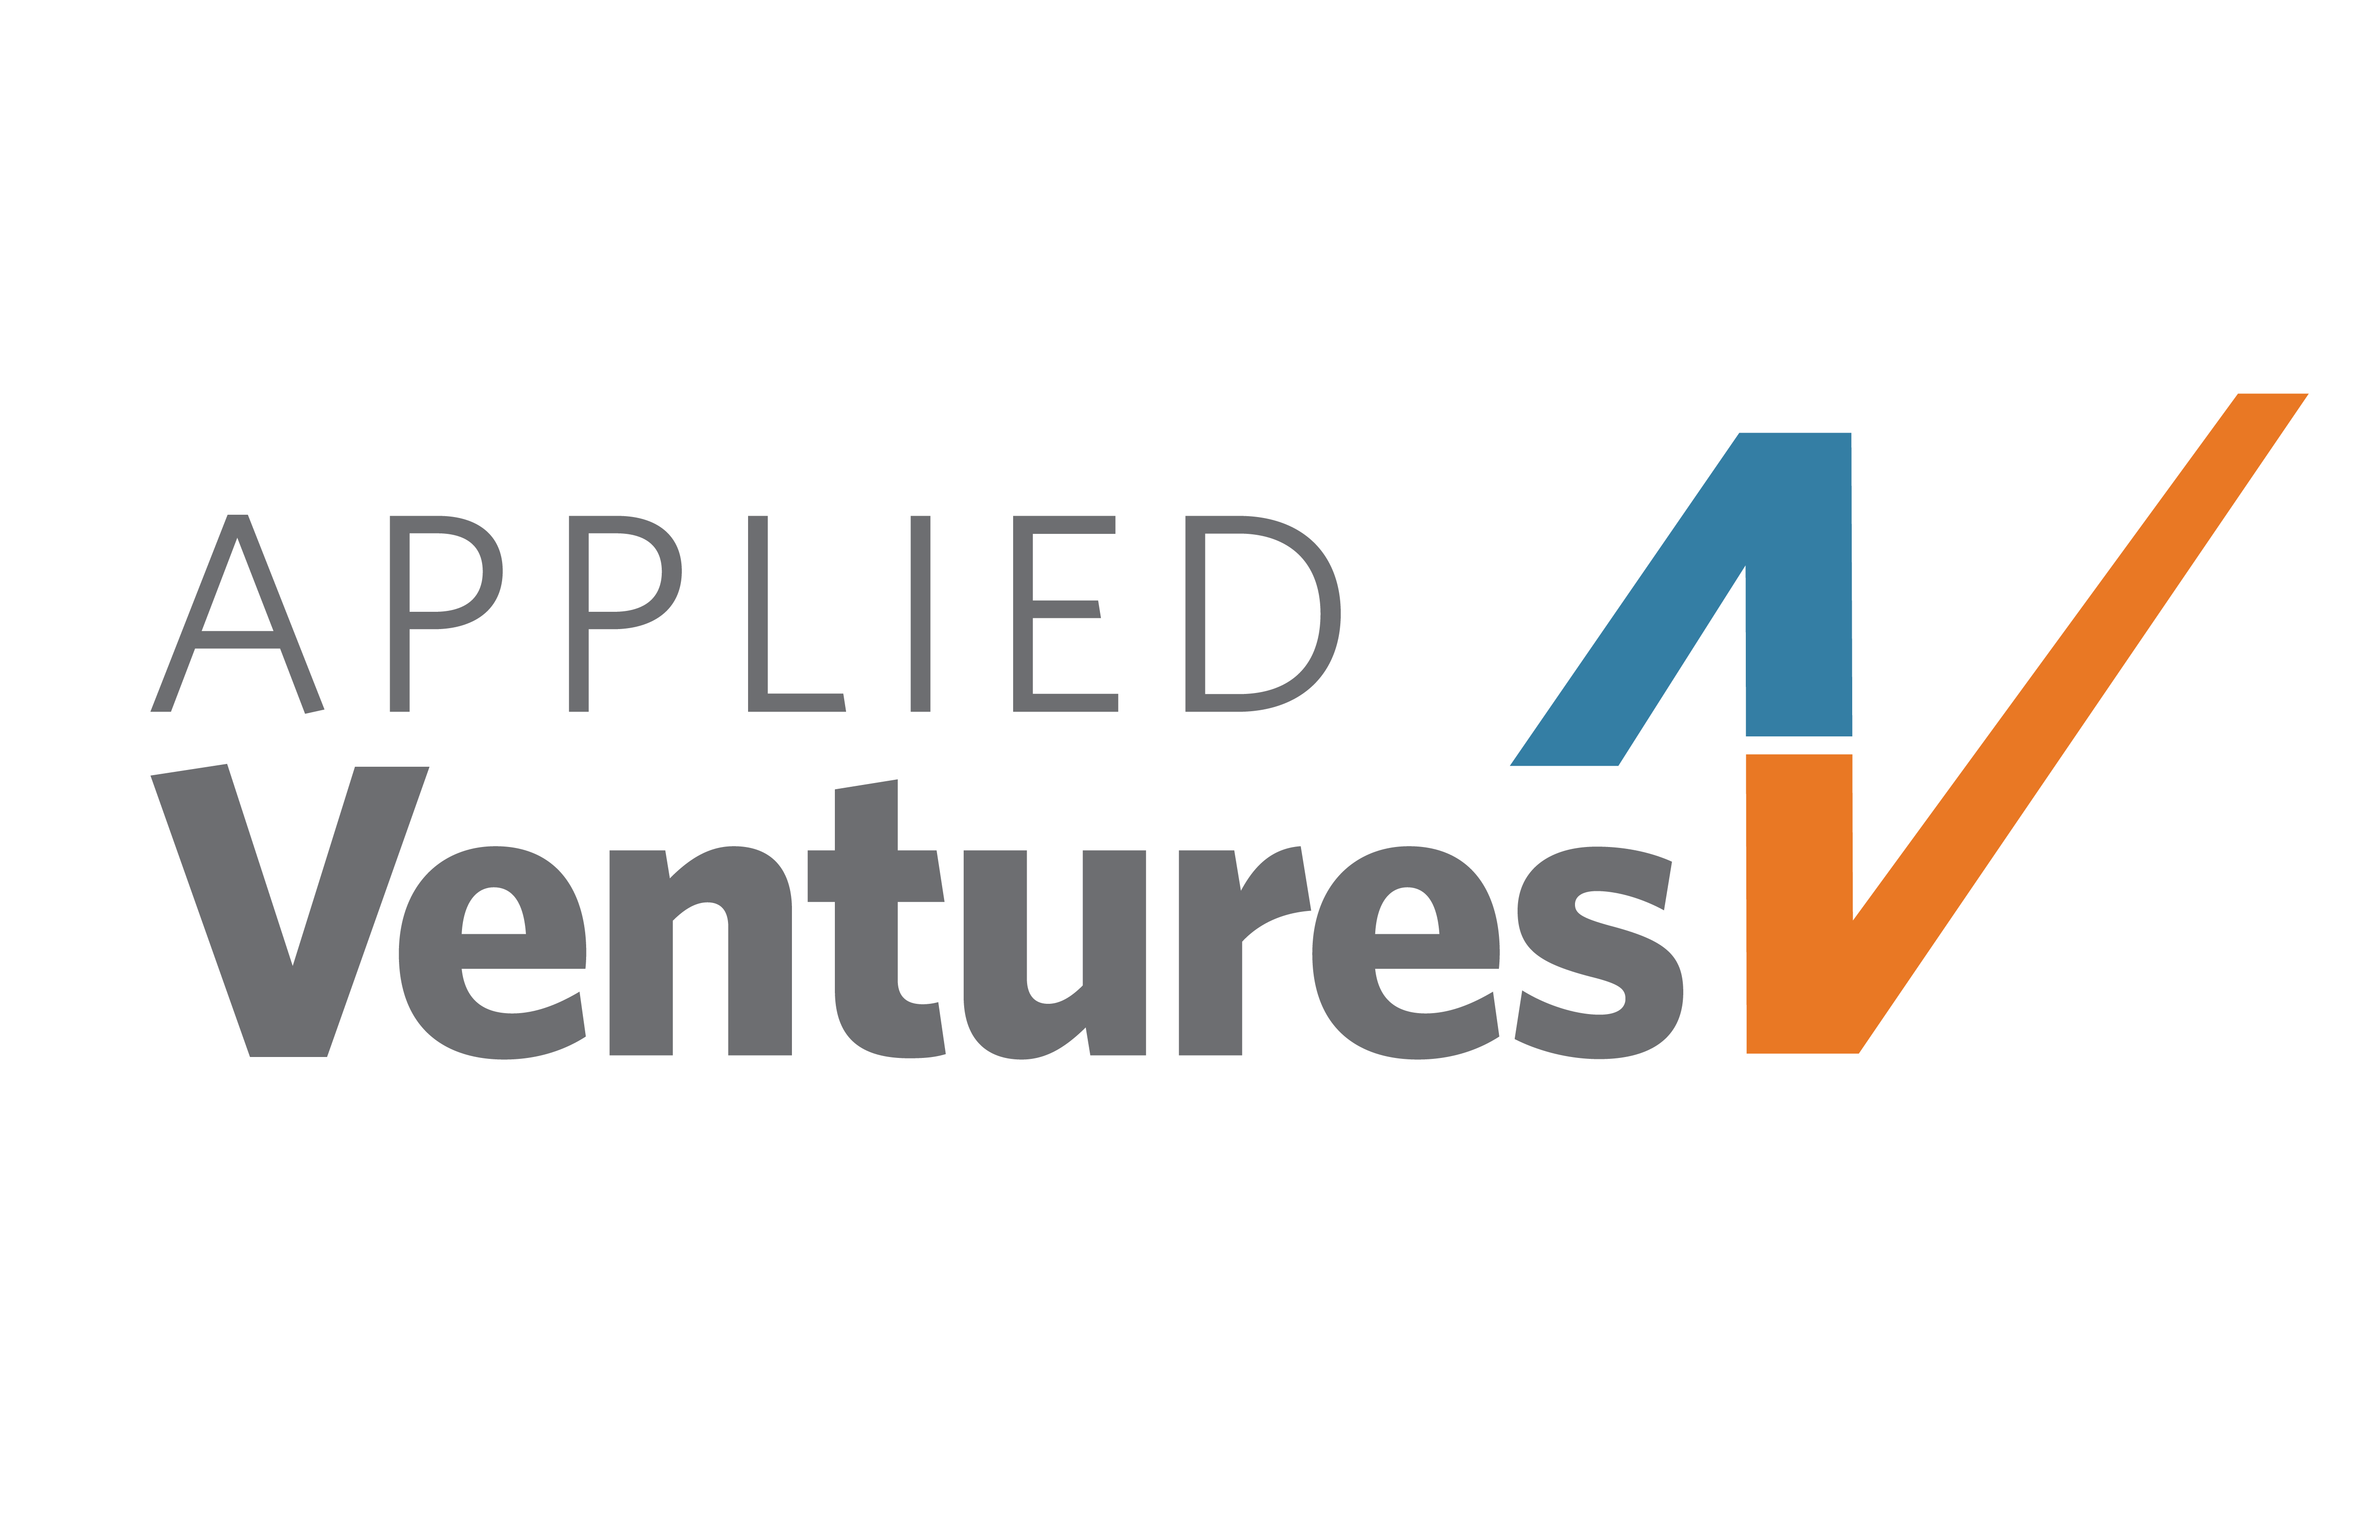 Applied Ventures